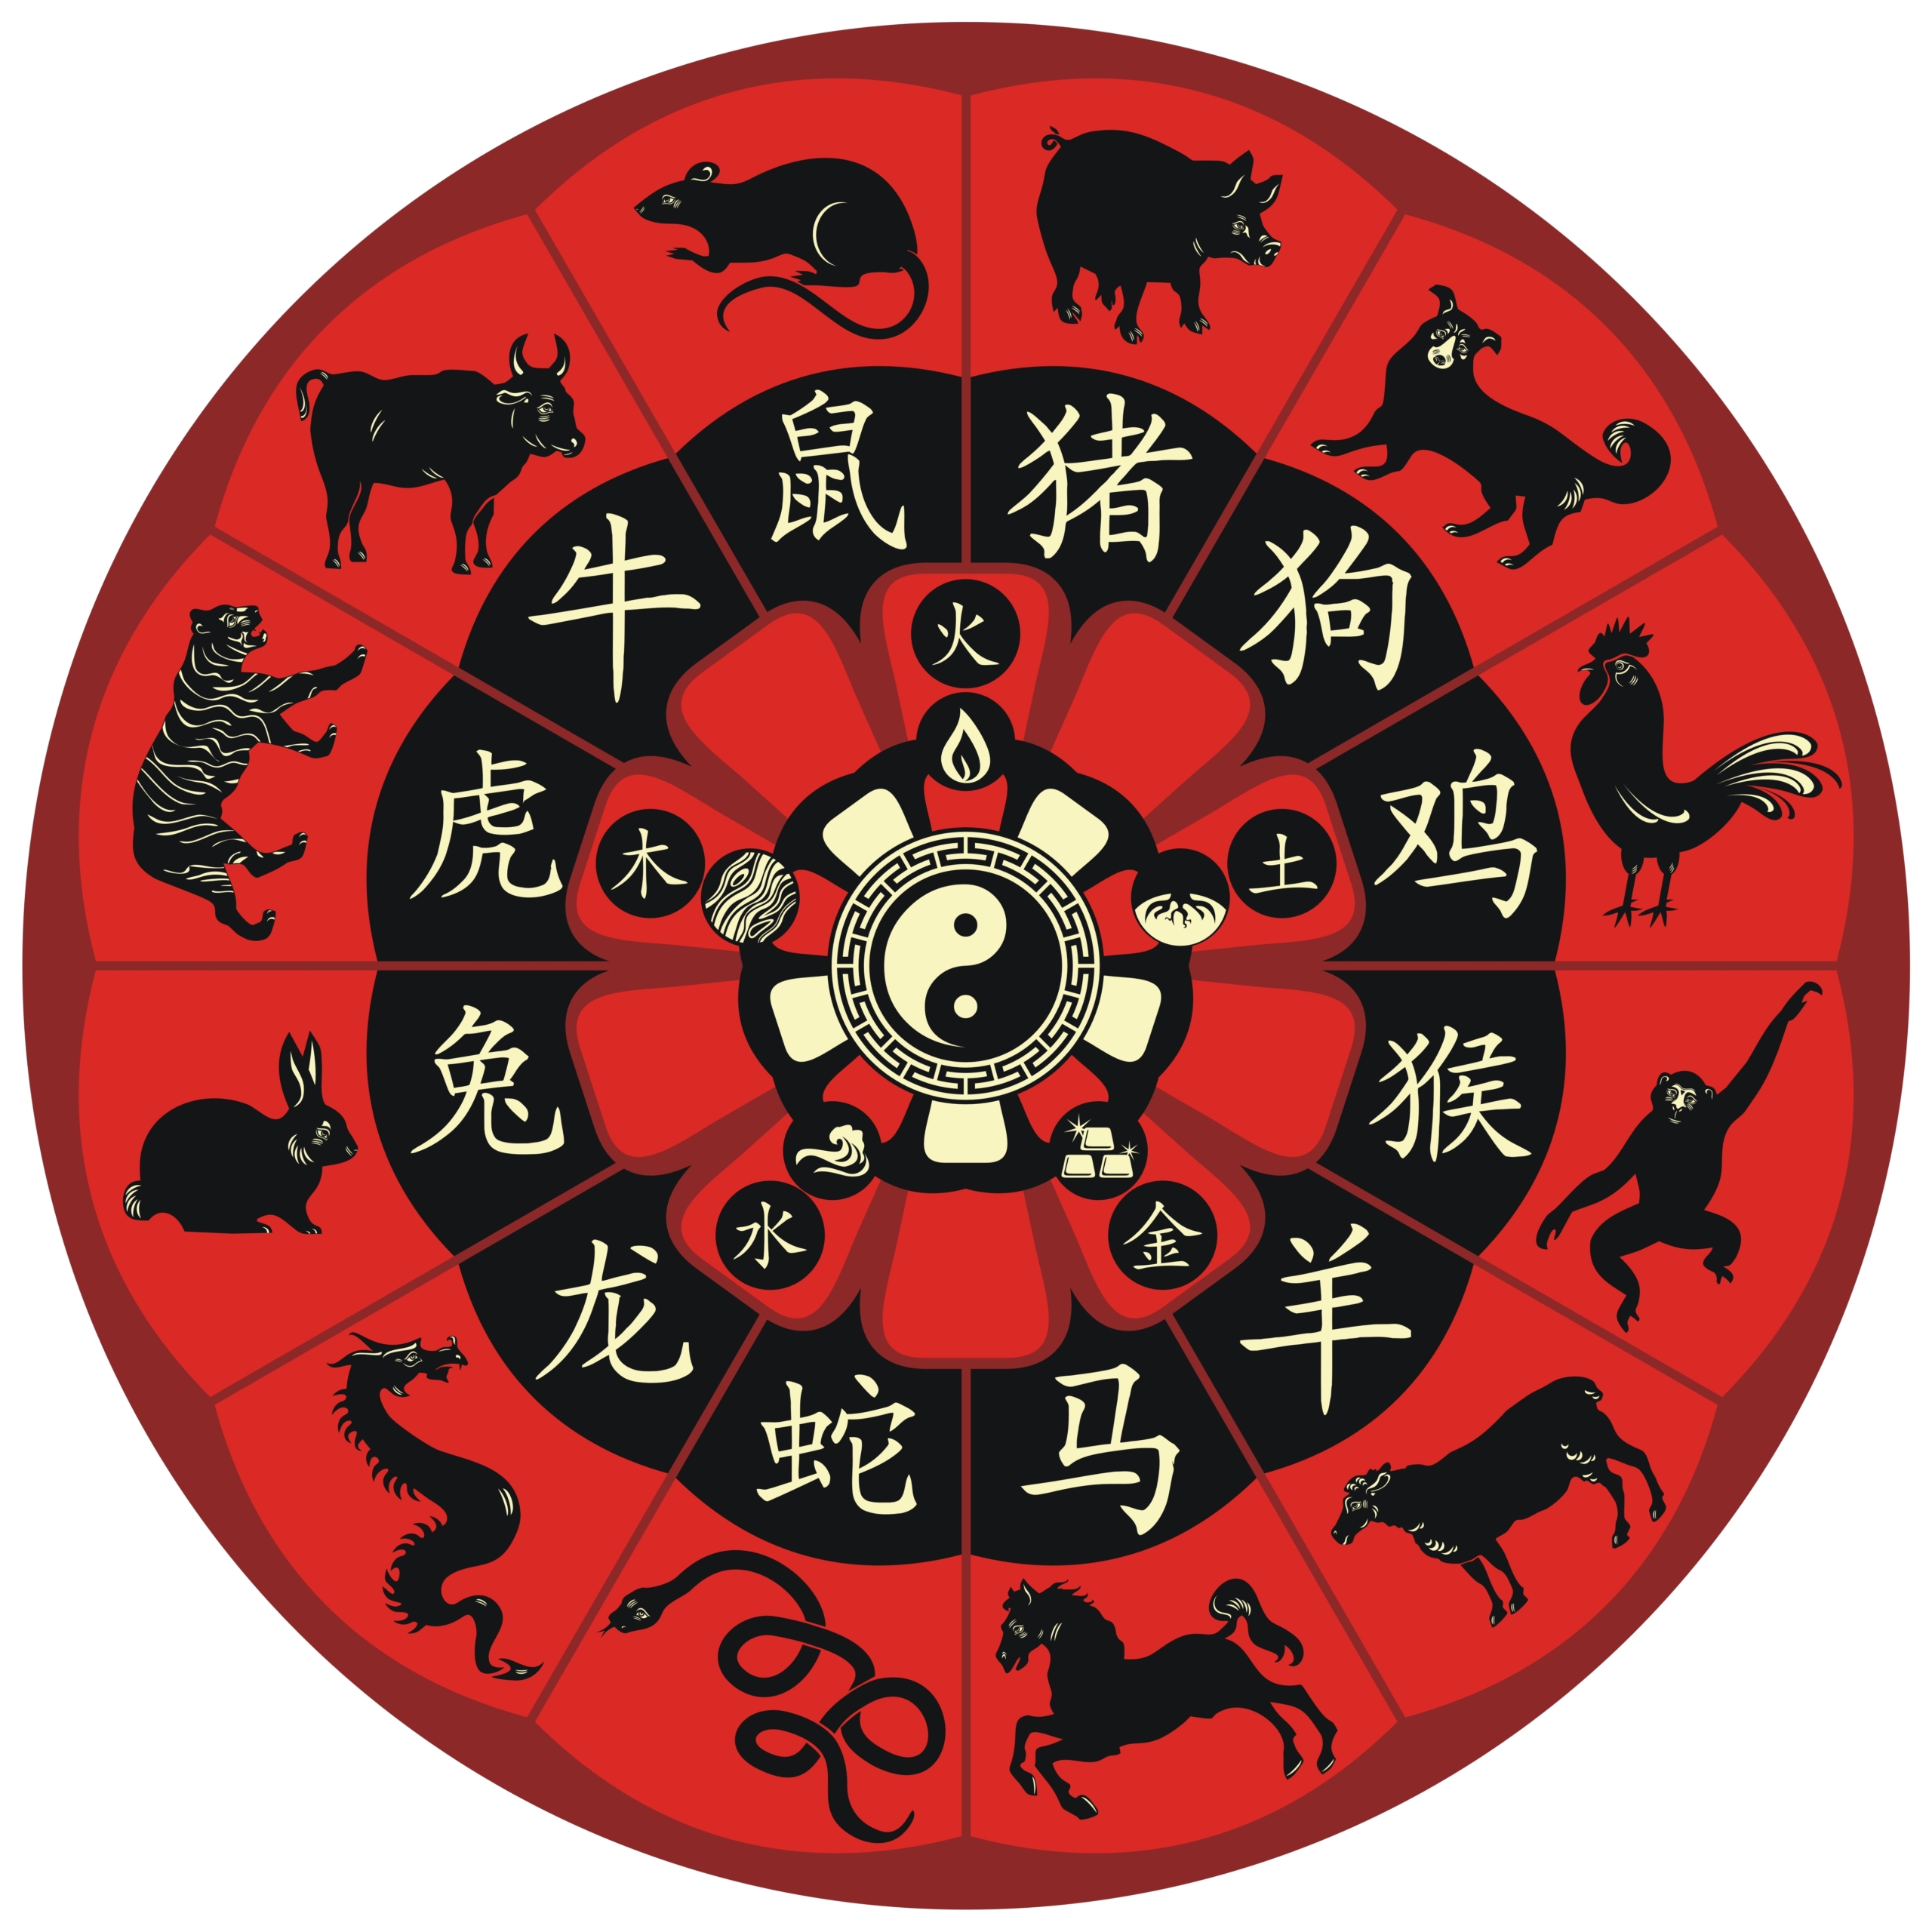 Vòng tròn 12 con giáp Trung Hoa, bao gồm các biểu tượng về ngũ hành. (Ảnh: Yurumi/Shutterstock)